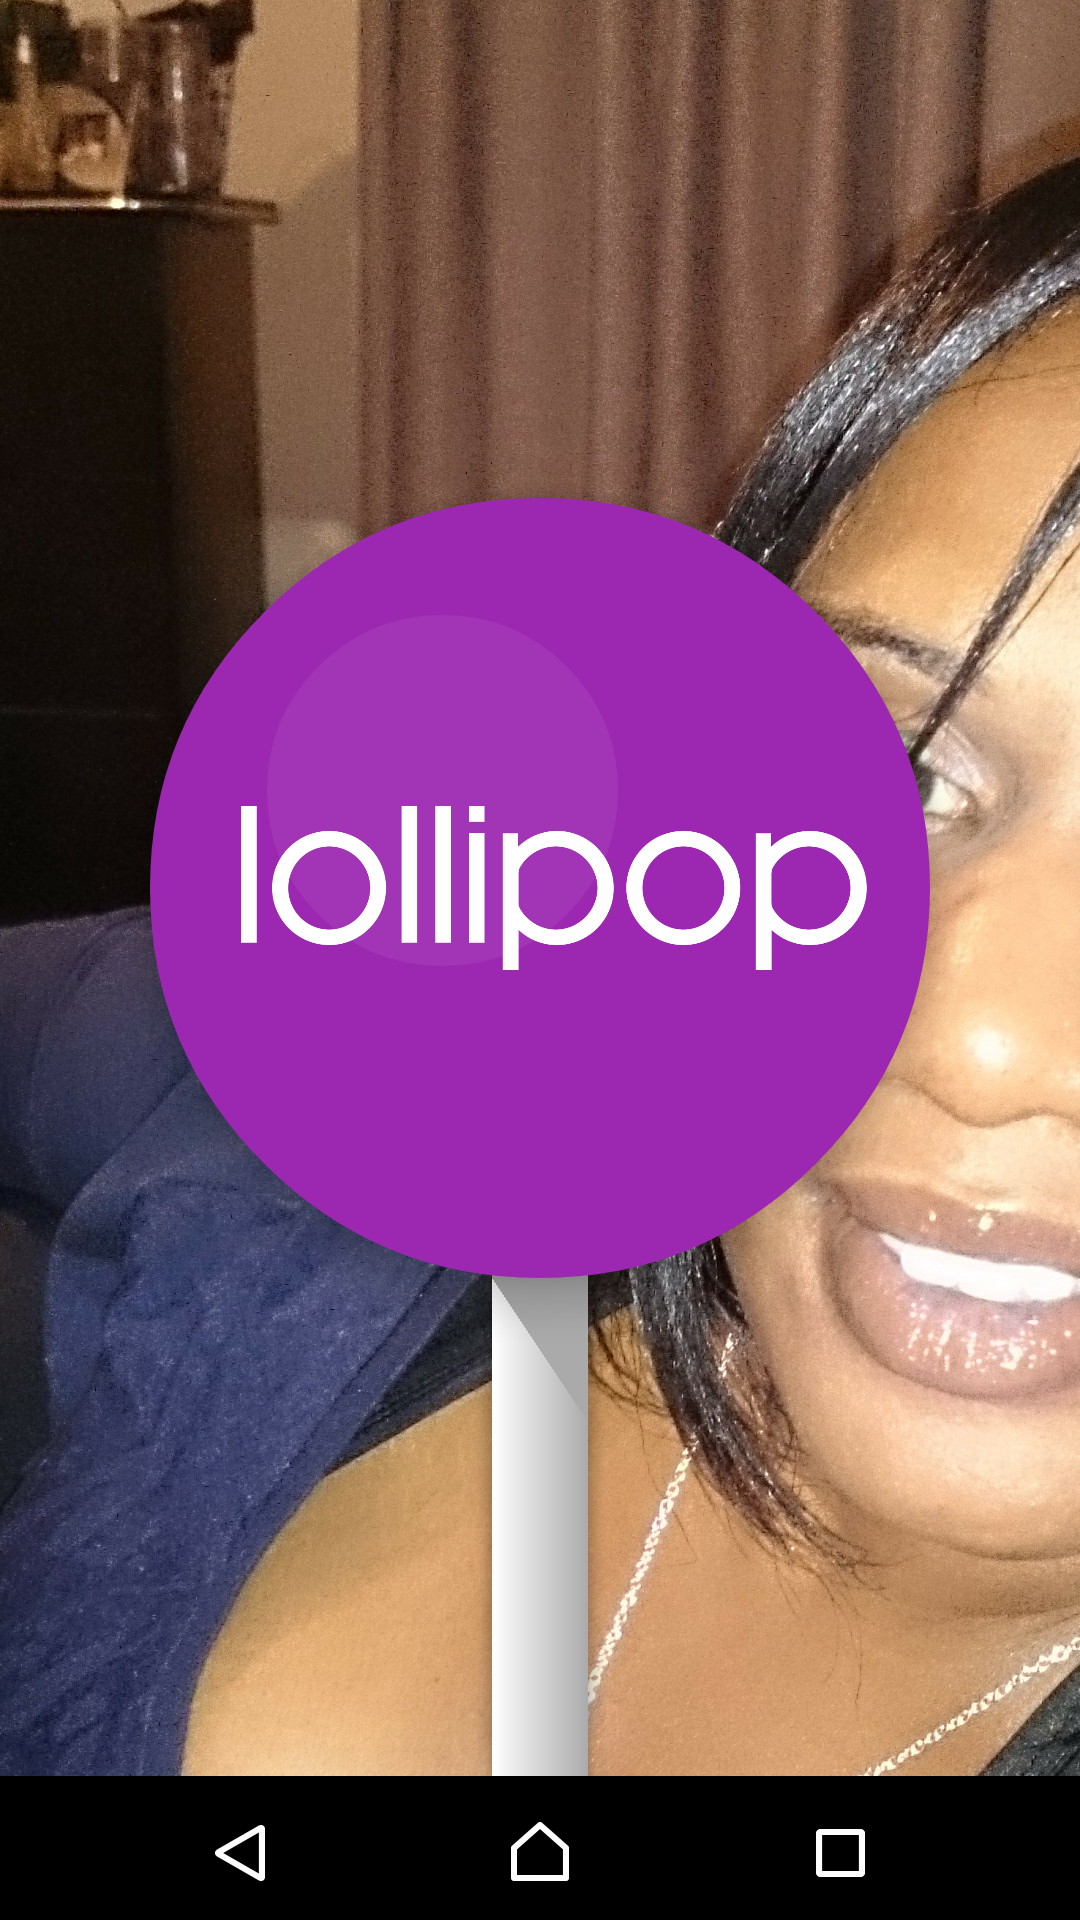 lollipop_2015-03-31-21-47-21.png